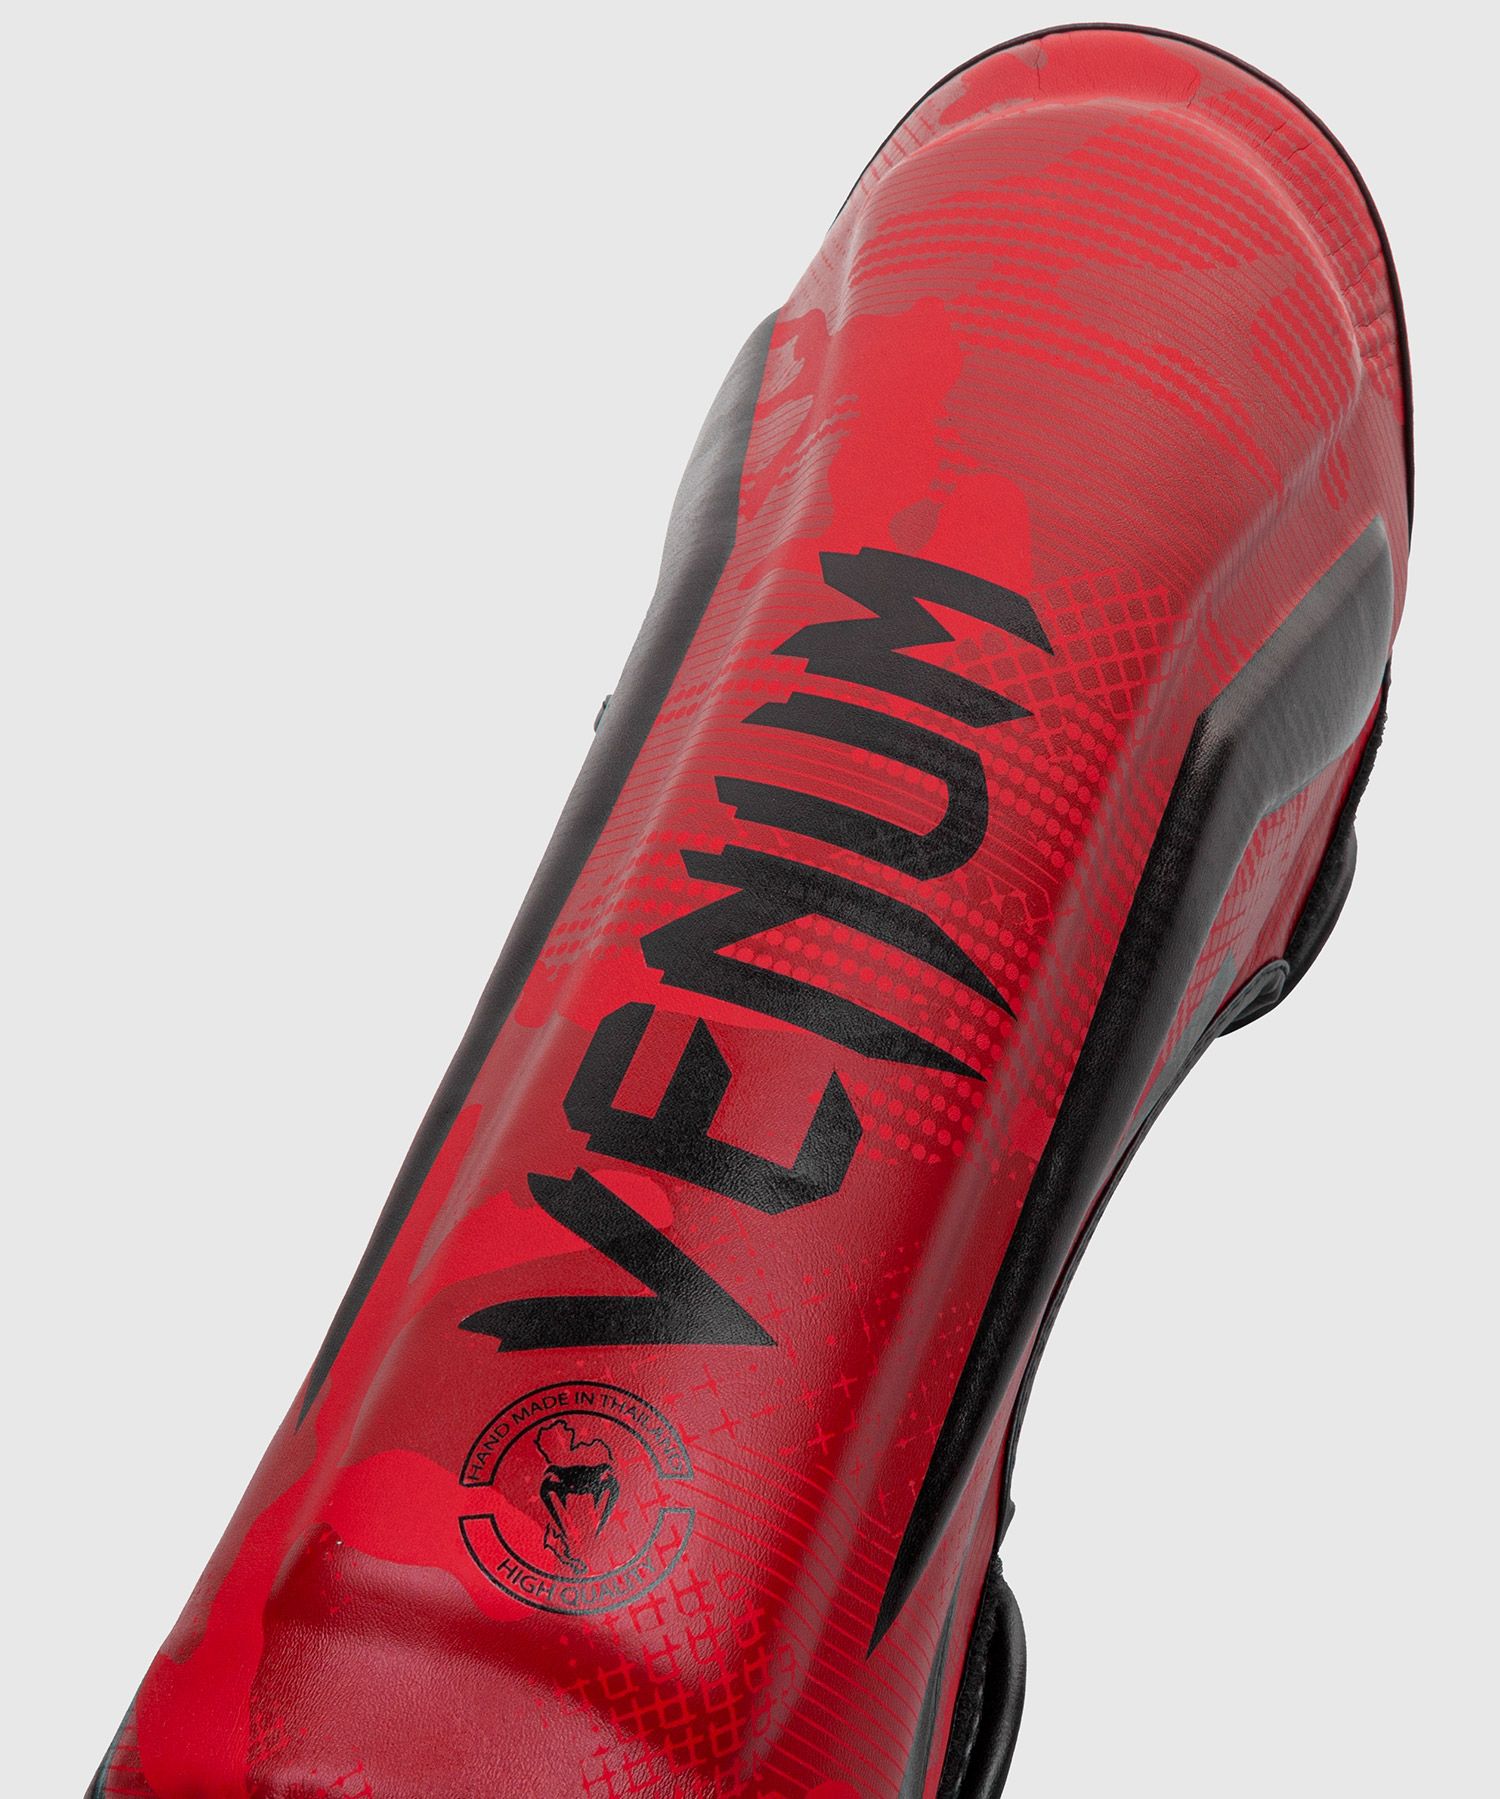 Venum Elite Shin Guards - Red Camo